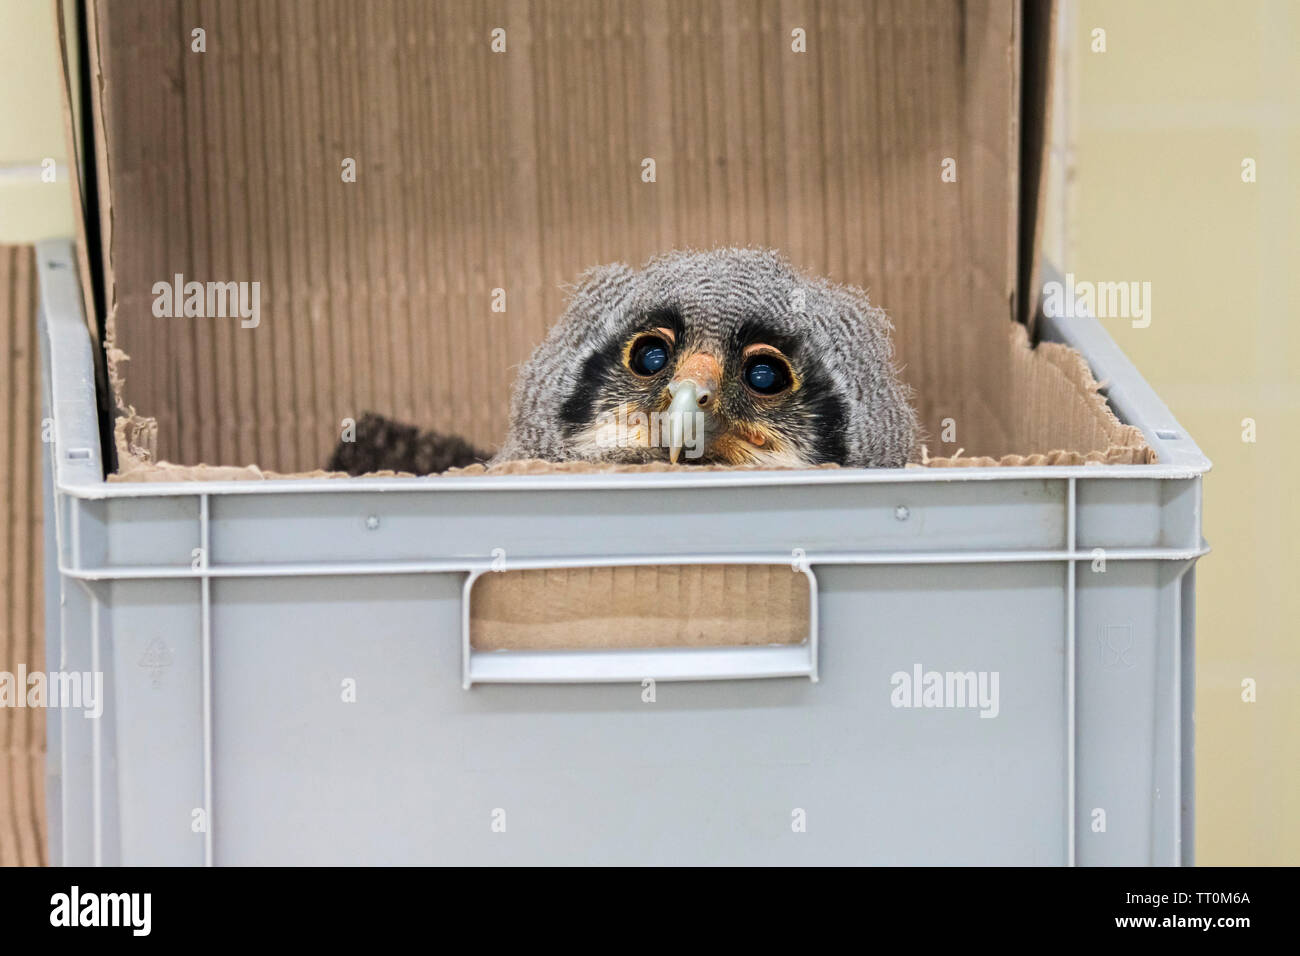 Sechs Wochen alte Verreaux's Uhu/milchig Uhu/giant Uhu (Bubo lacteus), Owlet in Kunststoffbox, die in der Gefangenschaft im Zoo geschlüpft Stockfoto